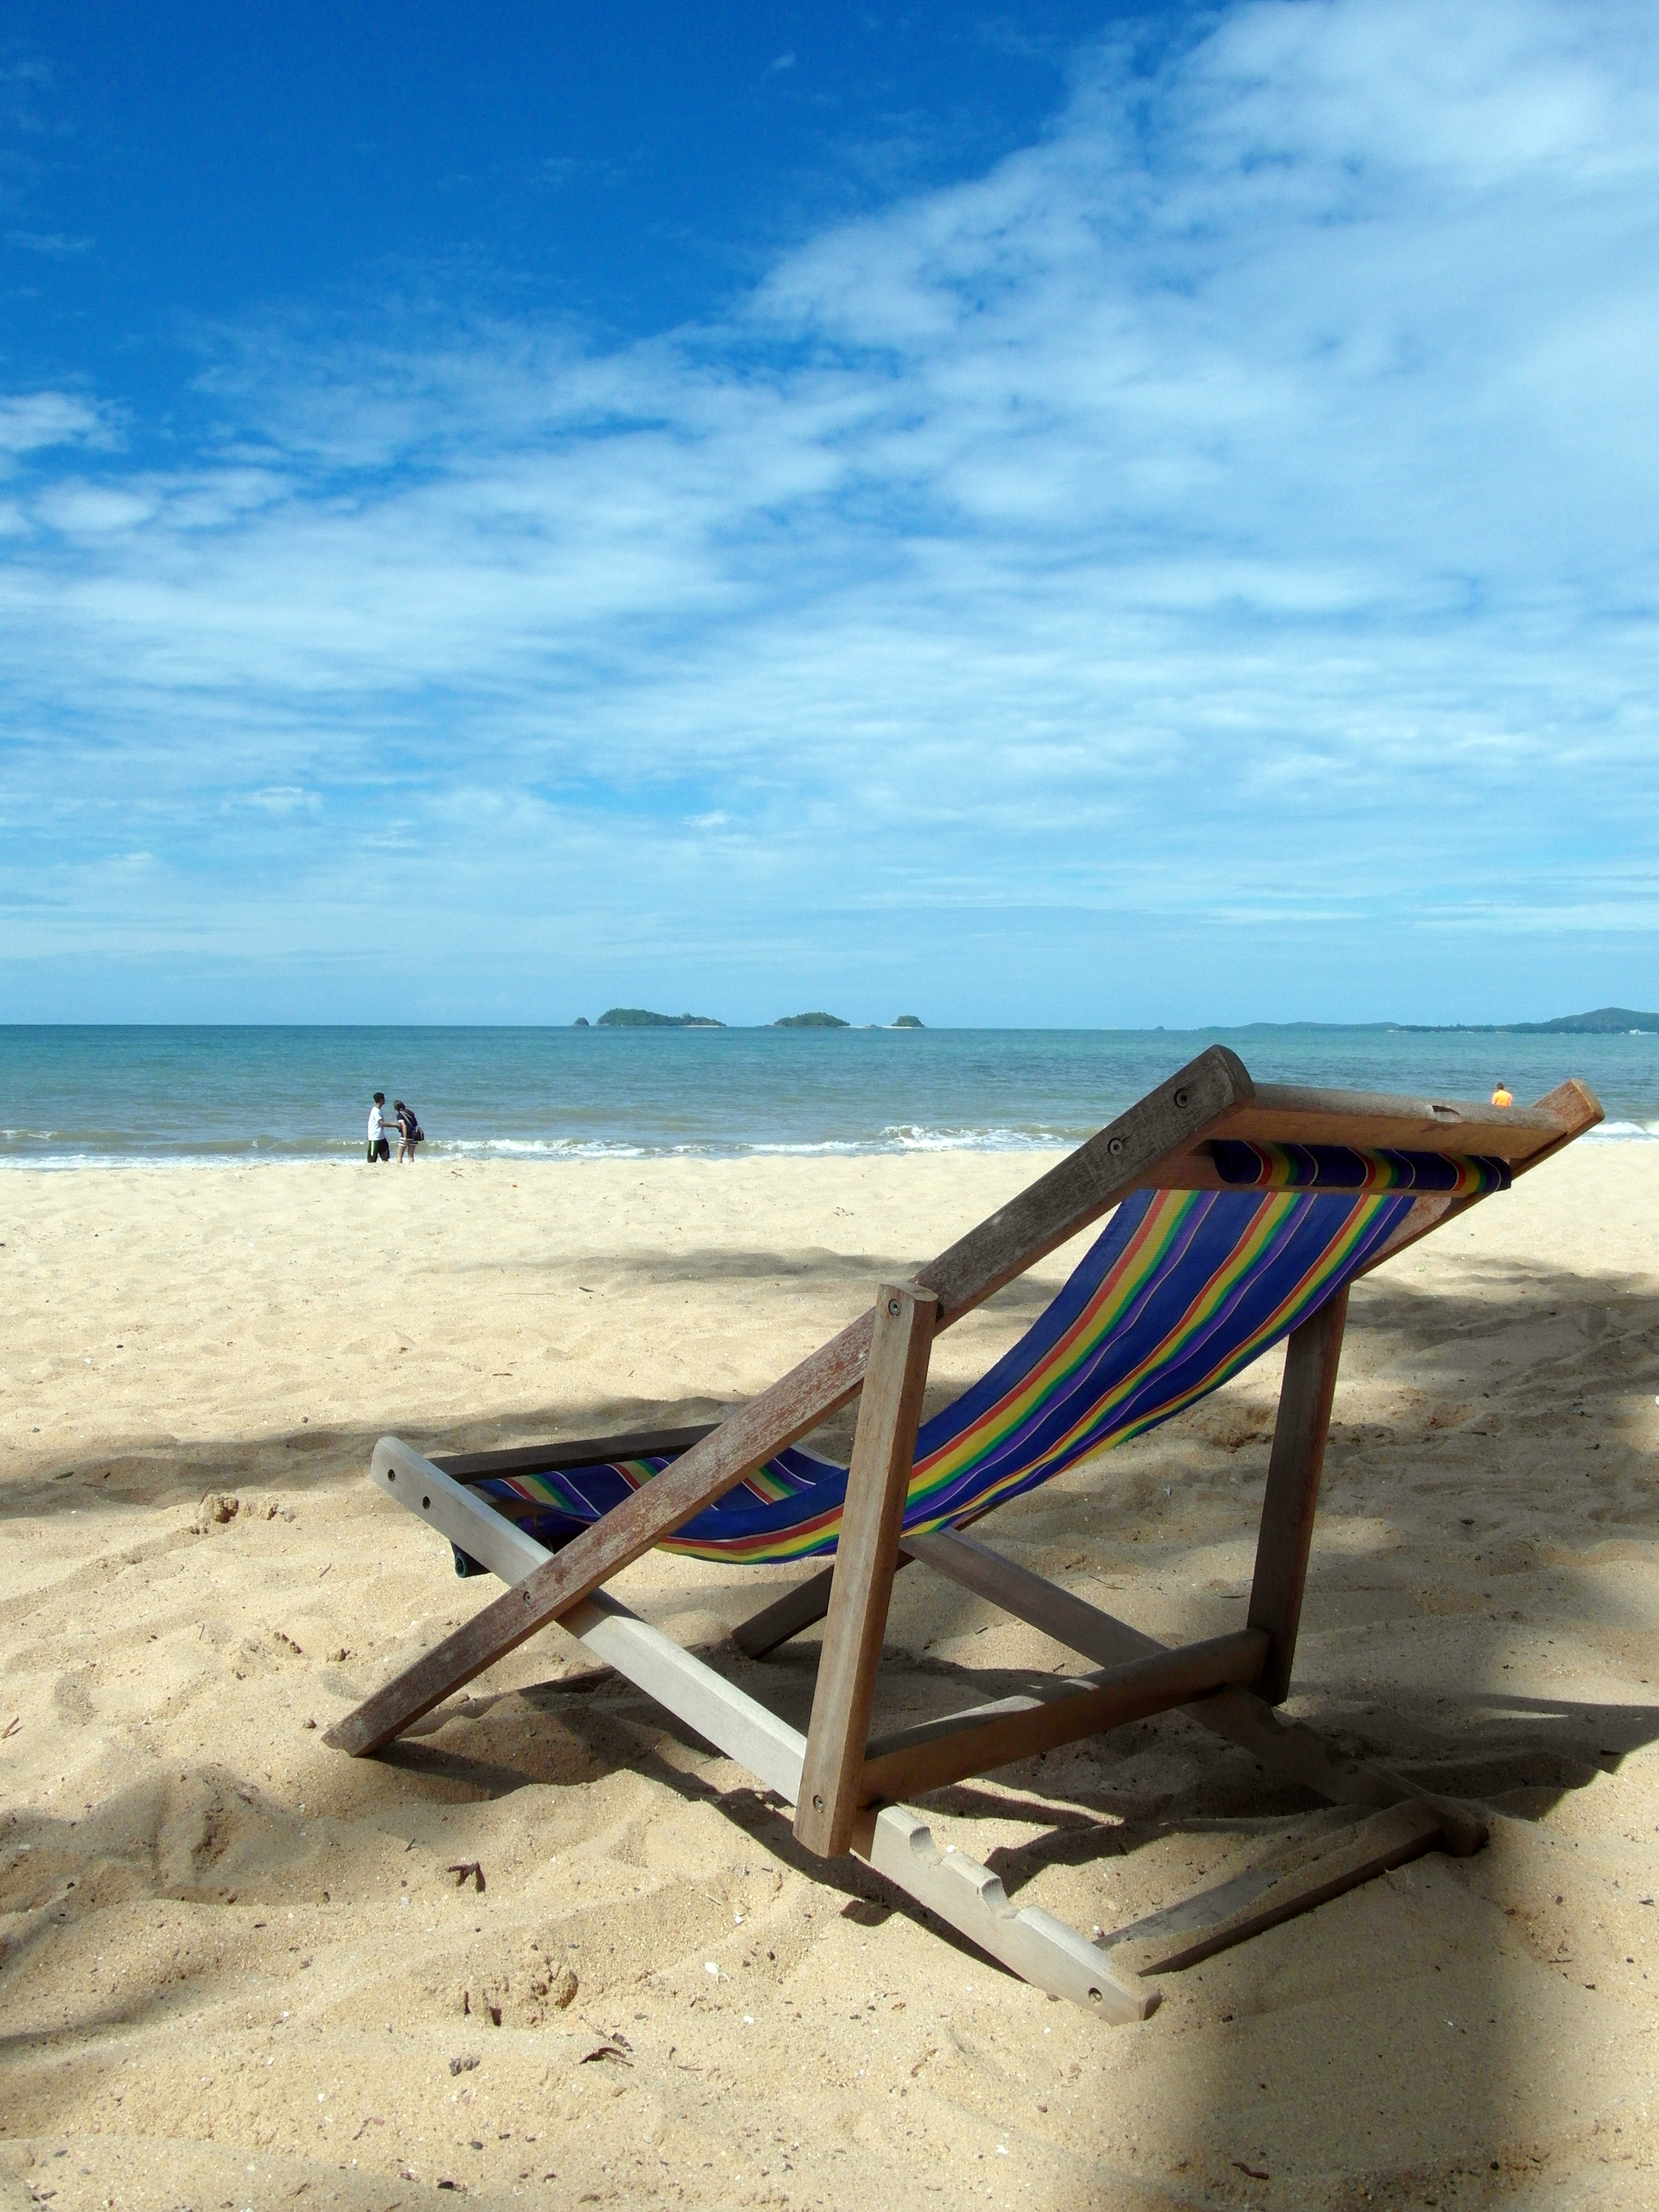 Deckchair on a tropical beach photo